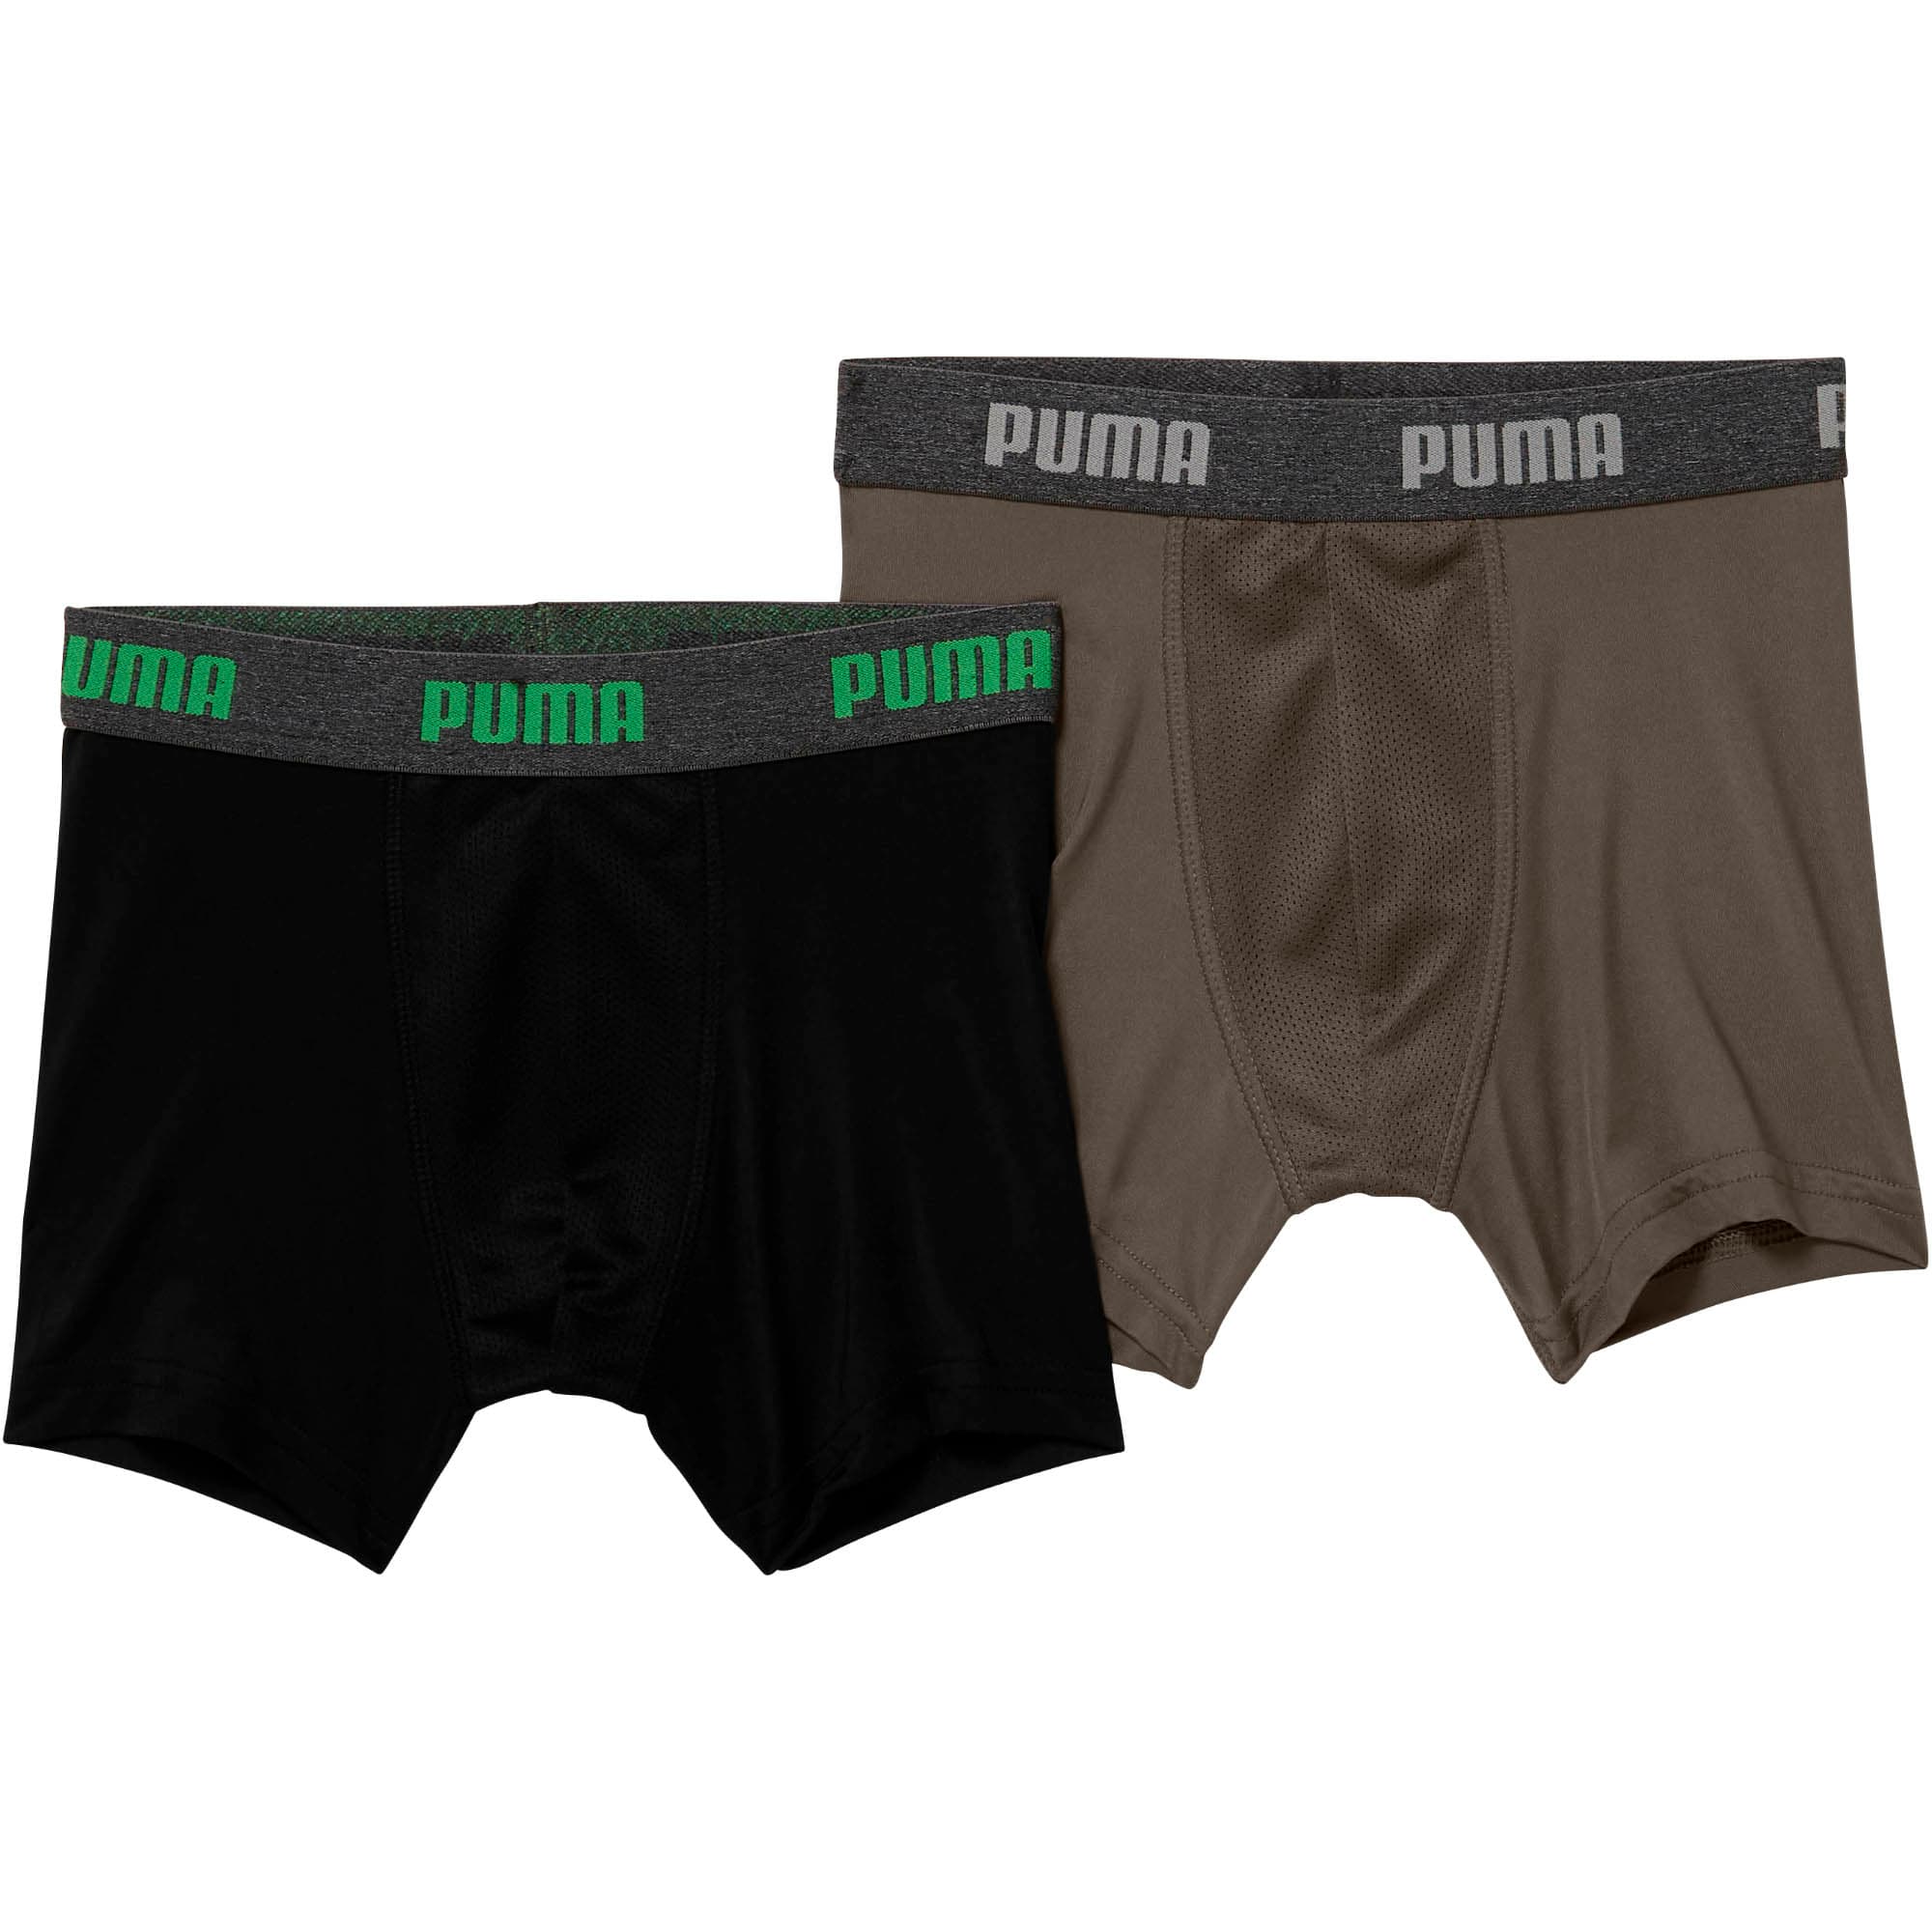 puma performance underwear